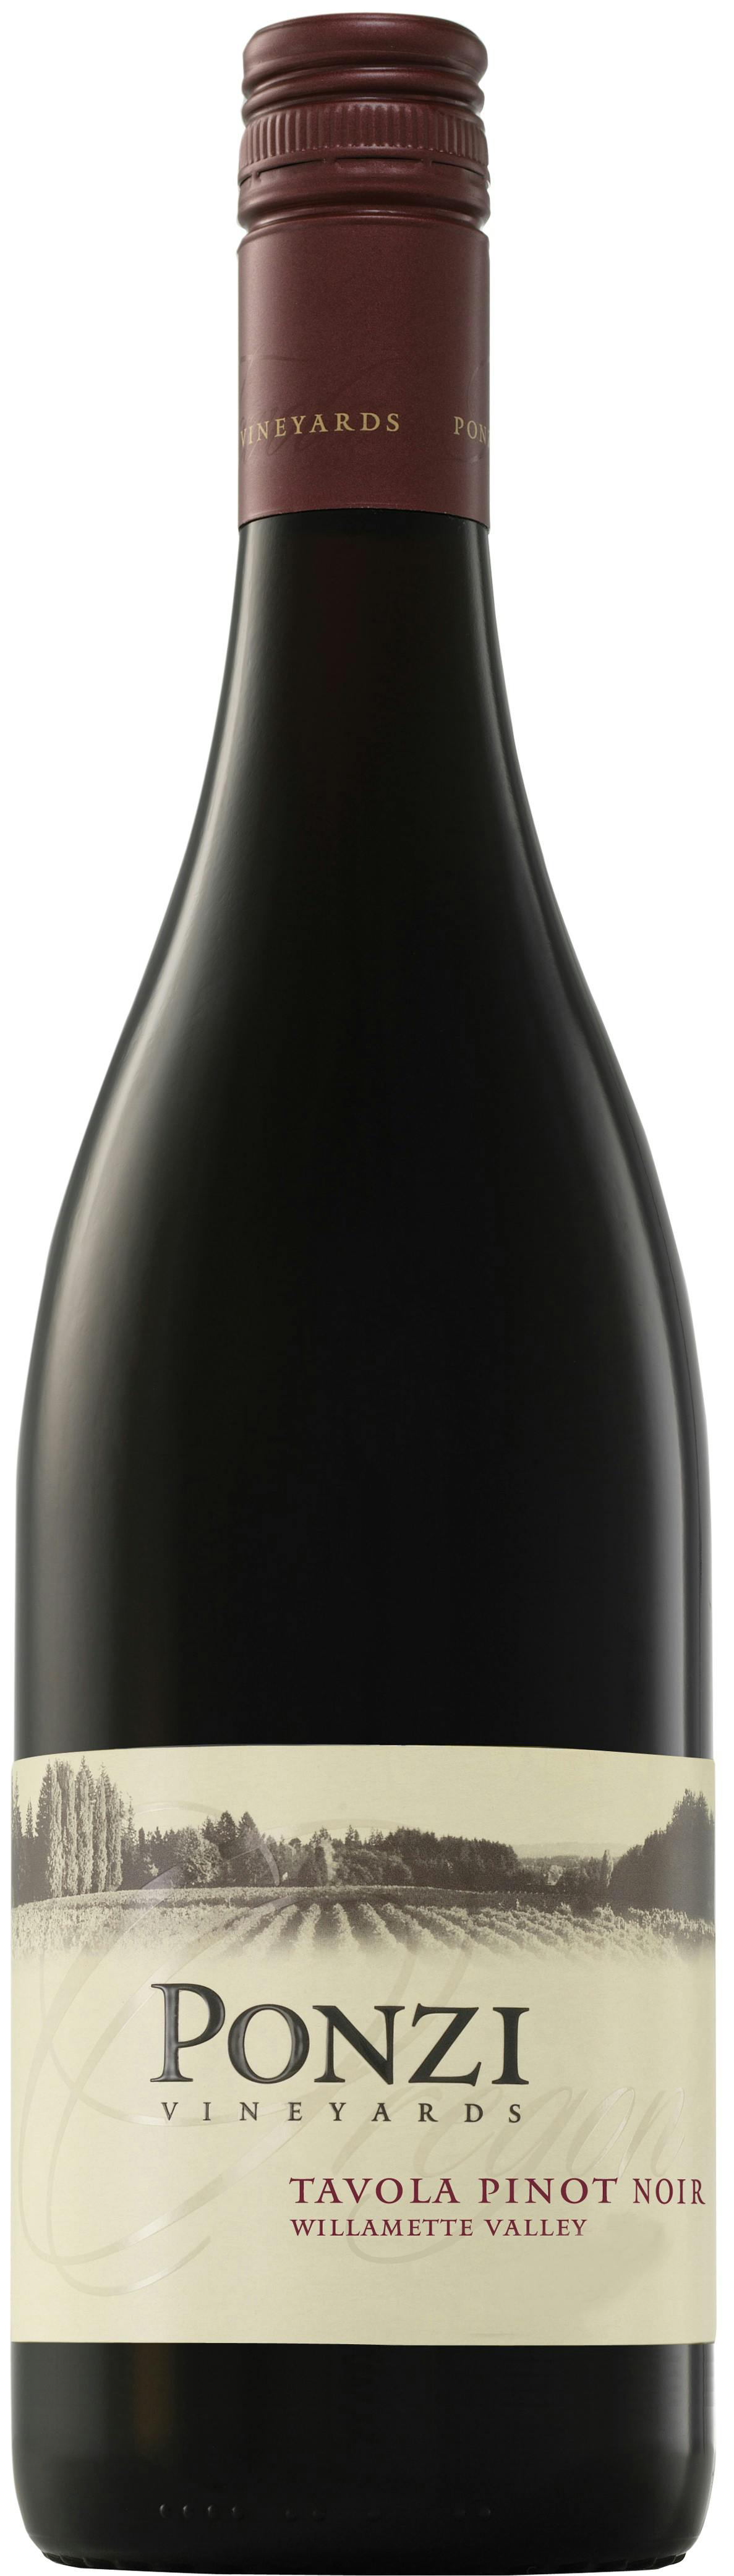 ネオ ネオ 2017年 NEO 赤 12本<BR>NEO 750ml 2693eワイナリー名を冠した代表作。古樹の凝縮感と長期熟成のリッチな味わい。  赤ワイン